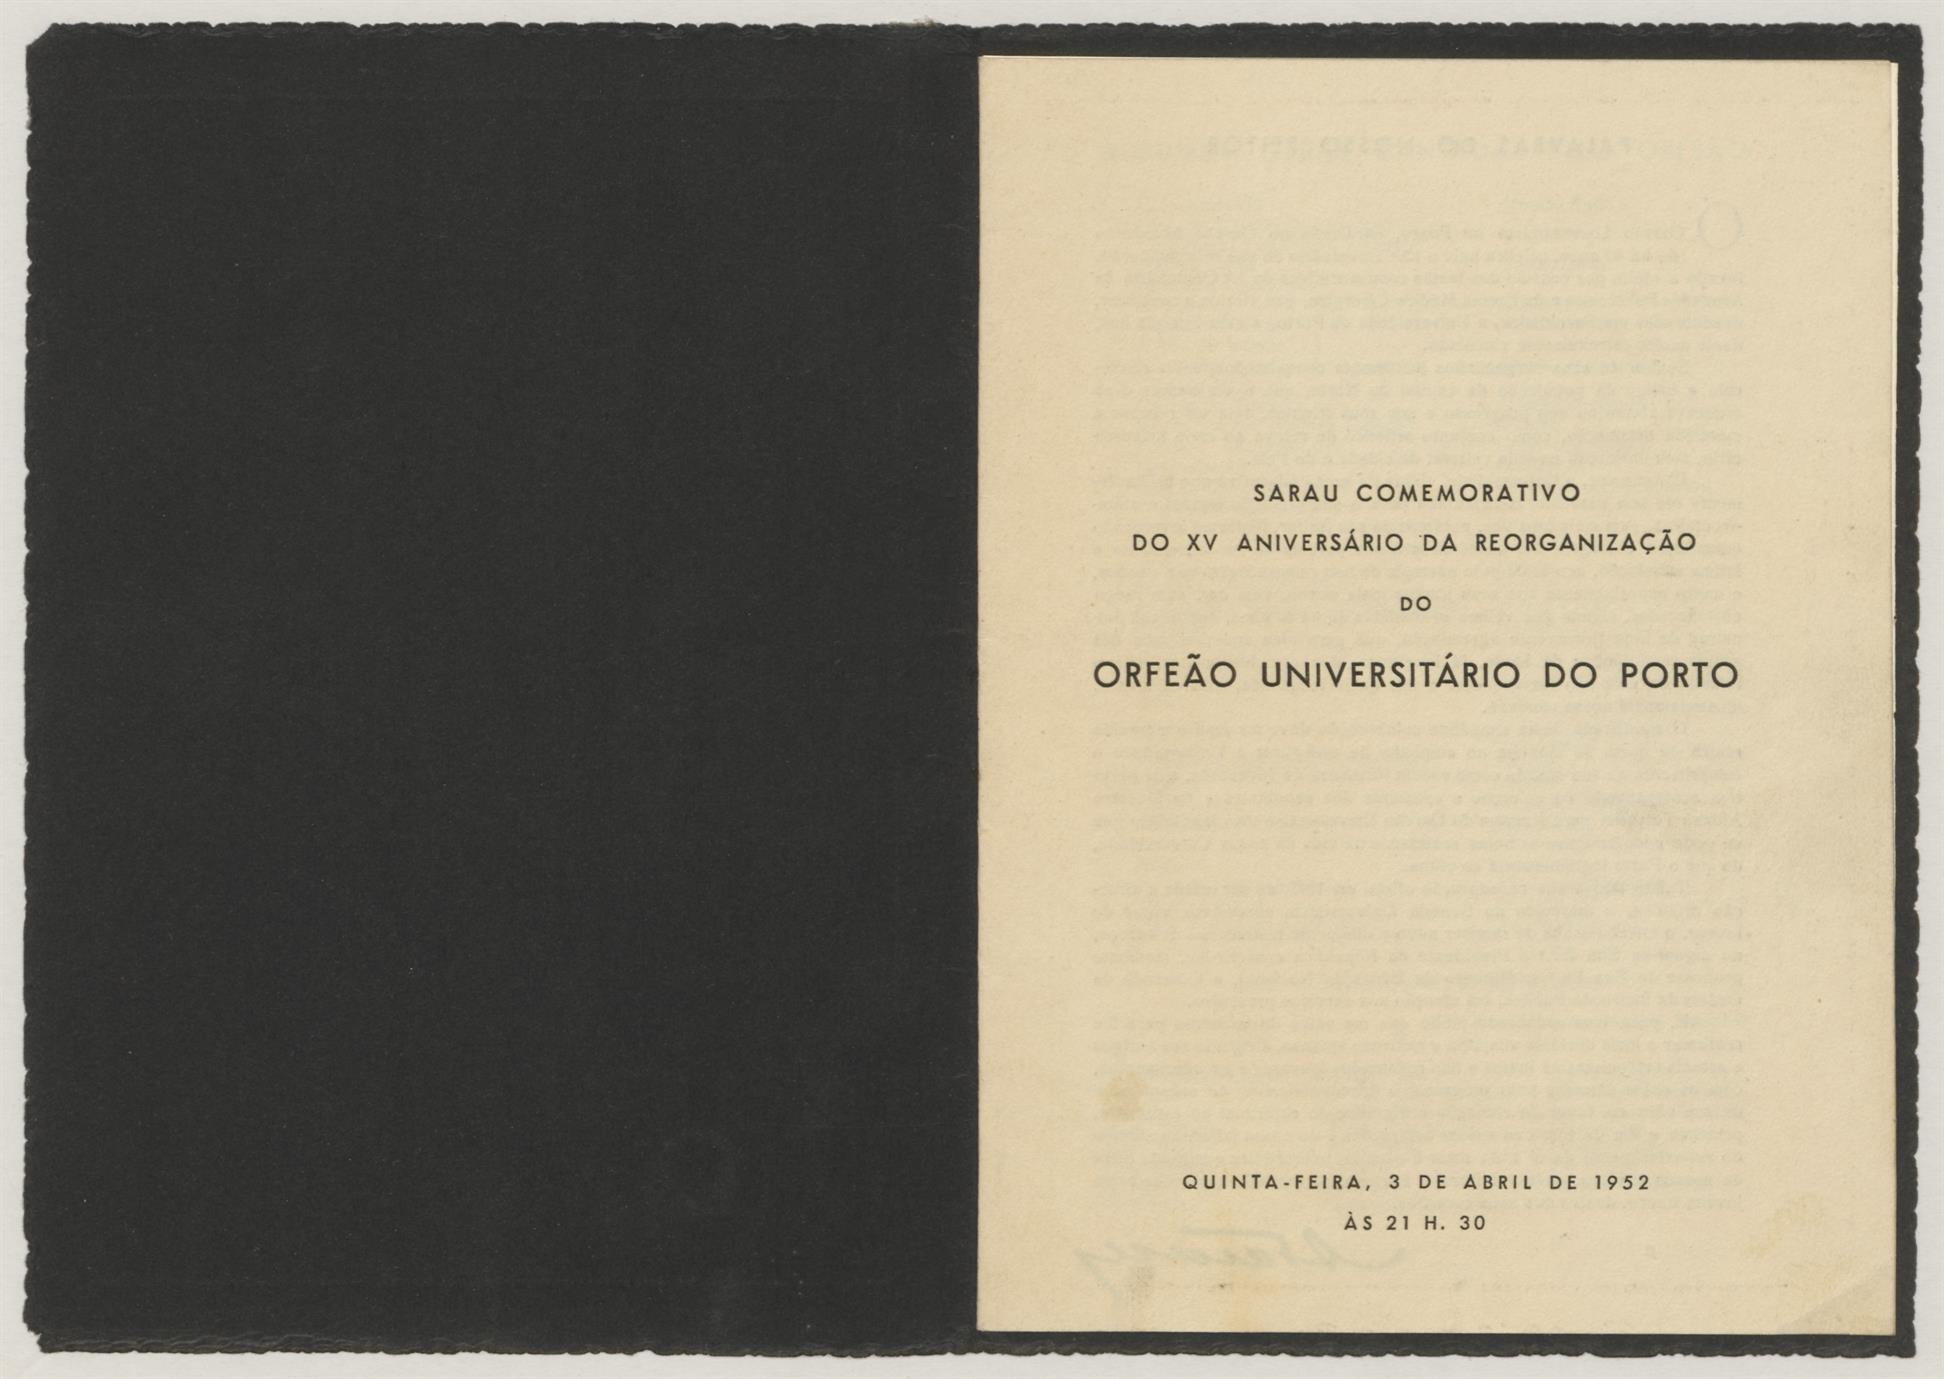 Sarau comemorativo do XV aniversário da reorganização do Orfeão Universitário do Porto